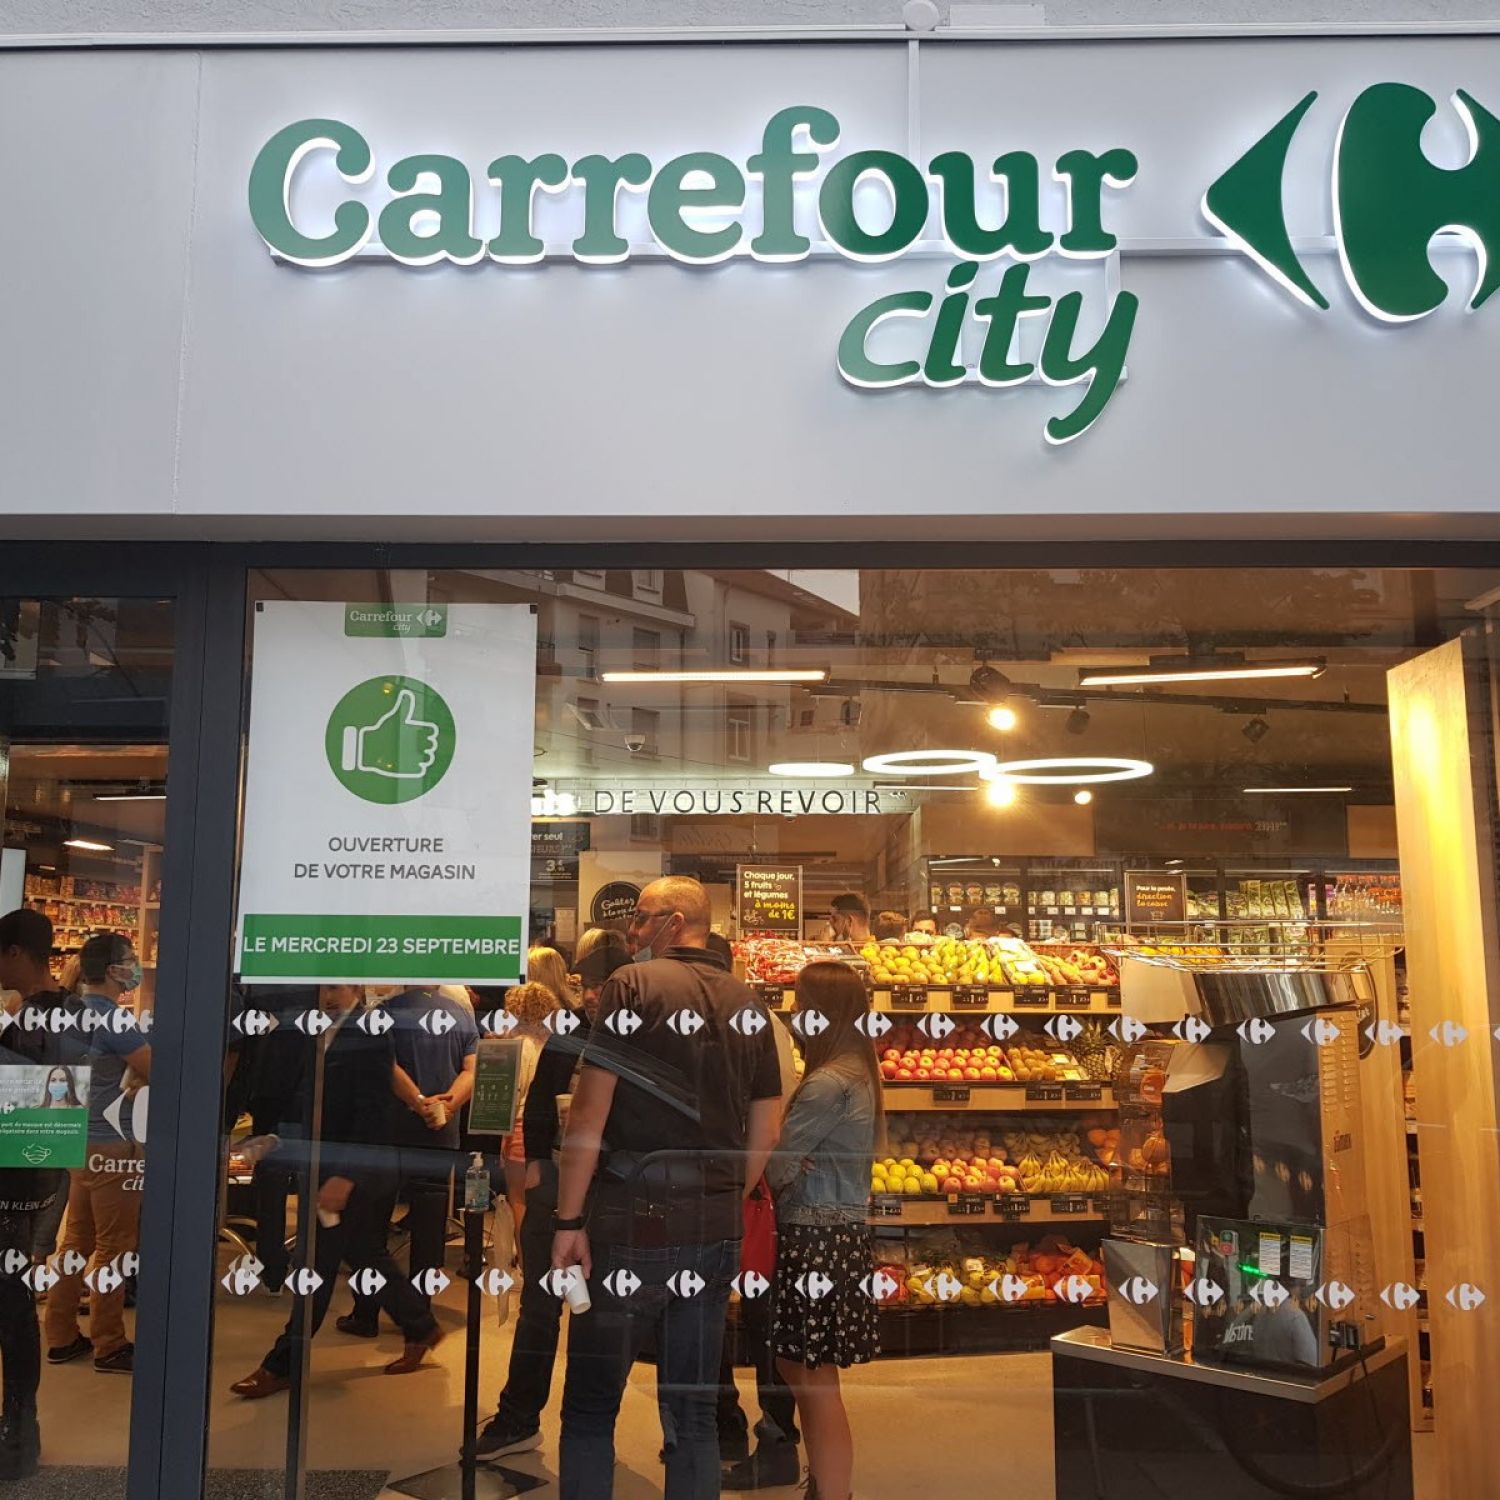 Braquage du Carrefour City : un homme arrêté et placé en garde à vue